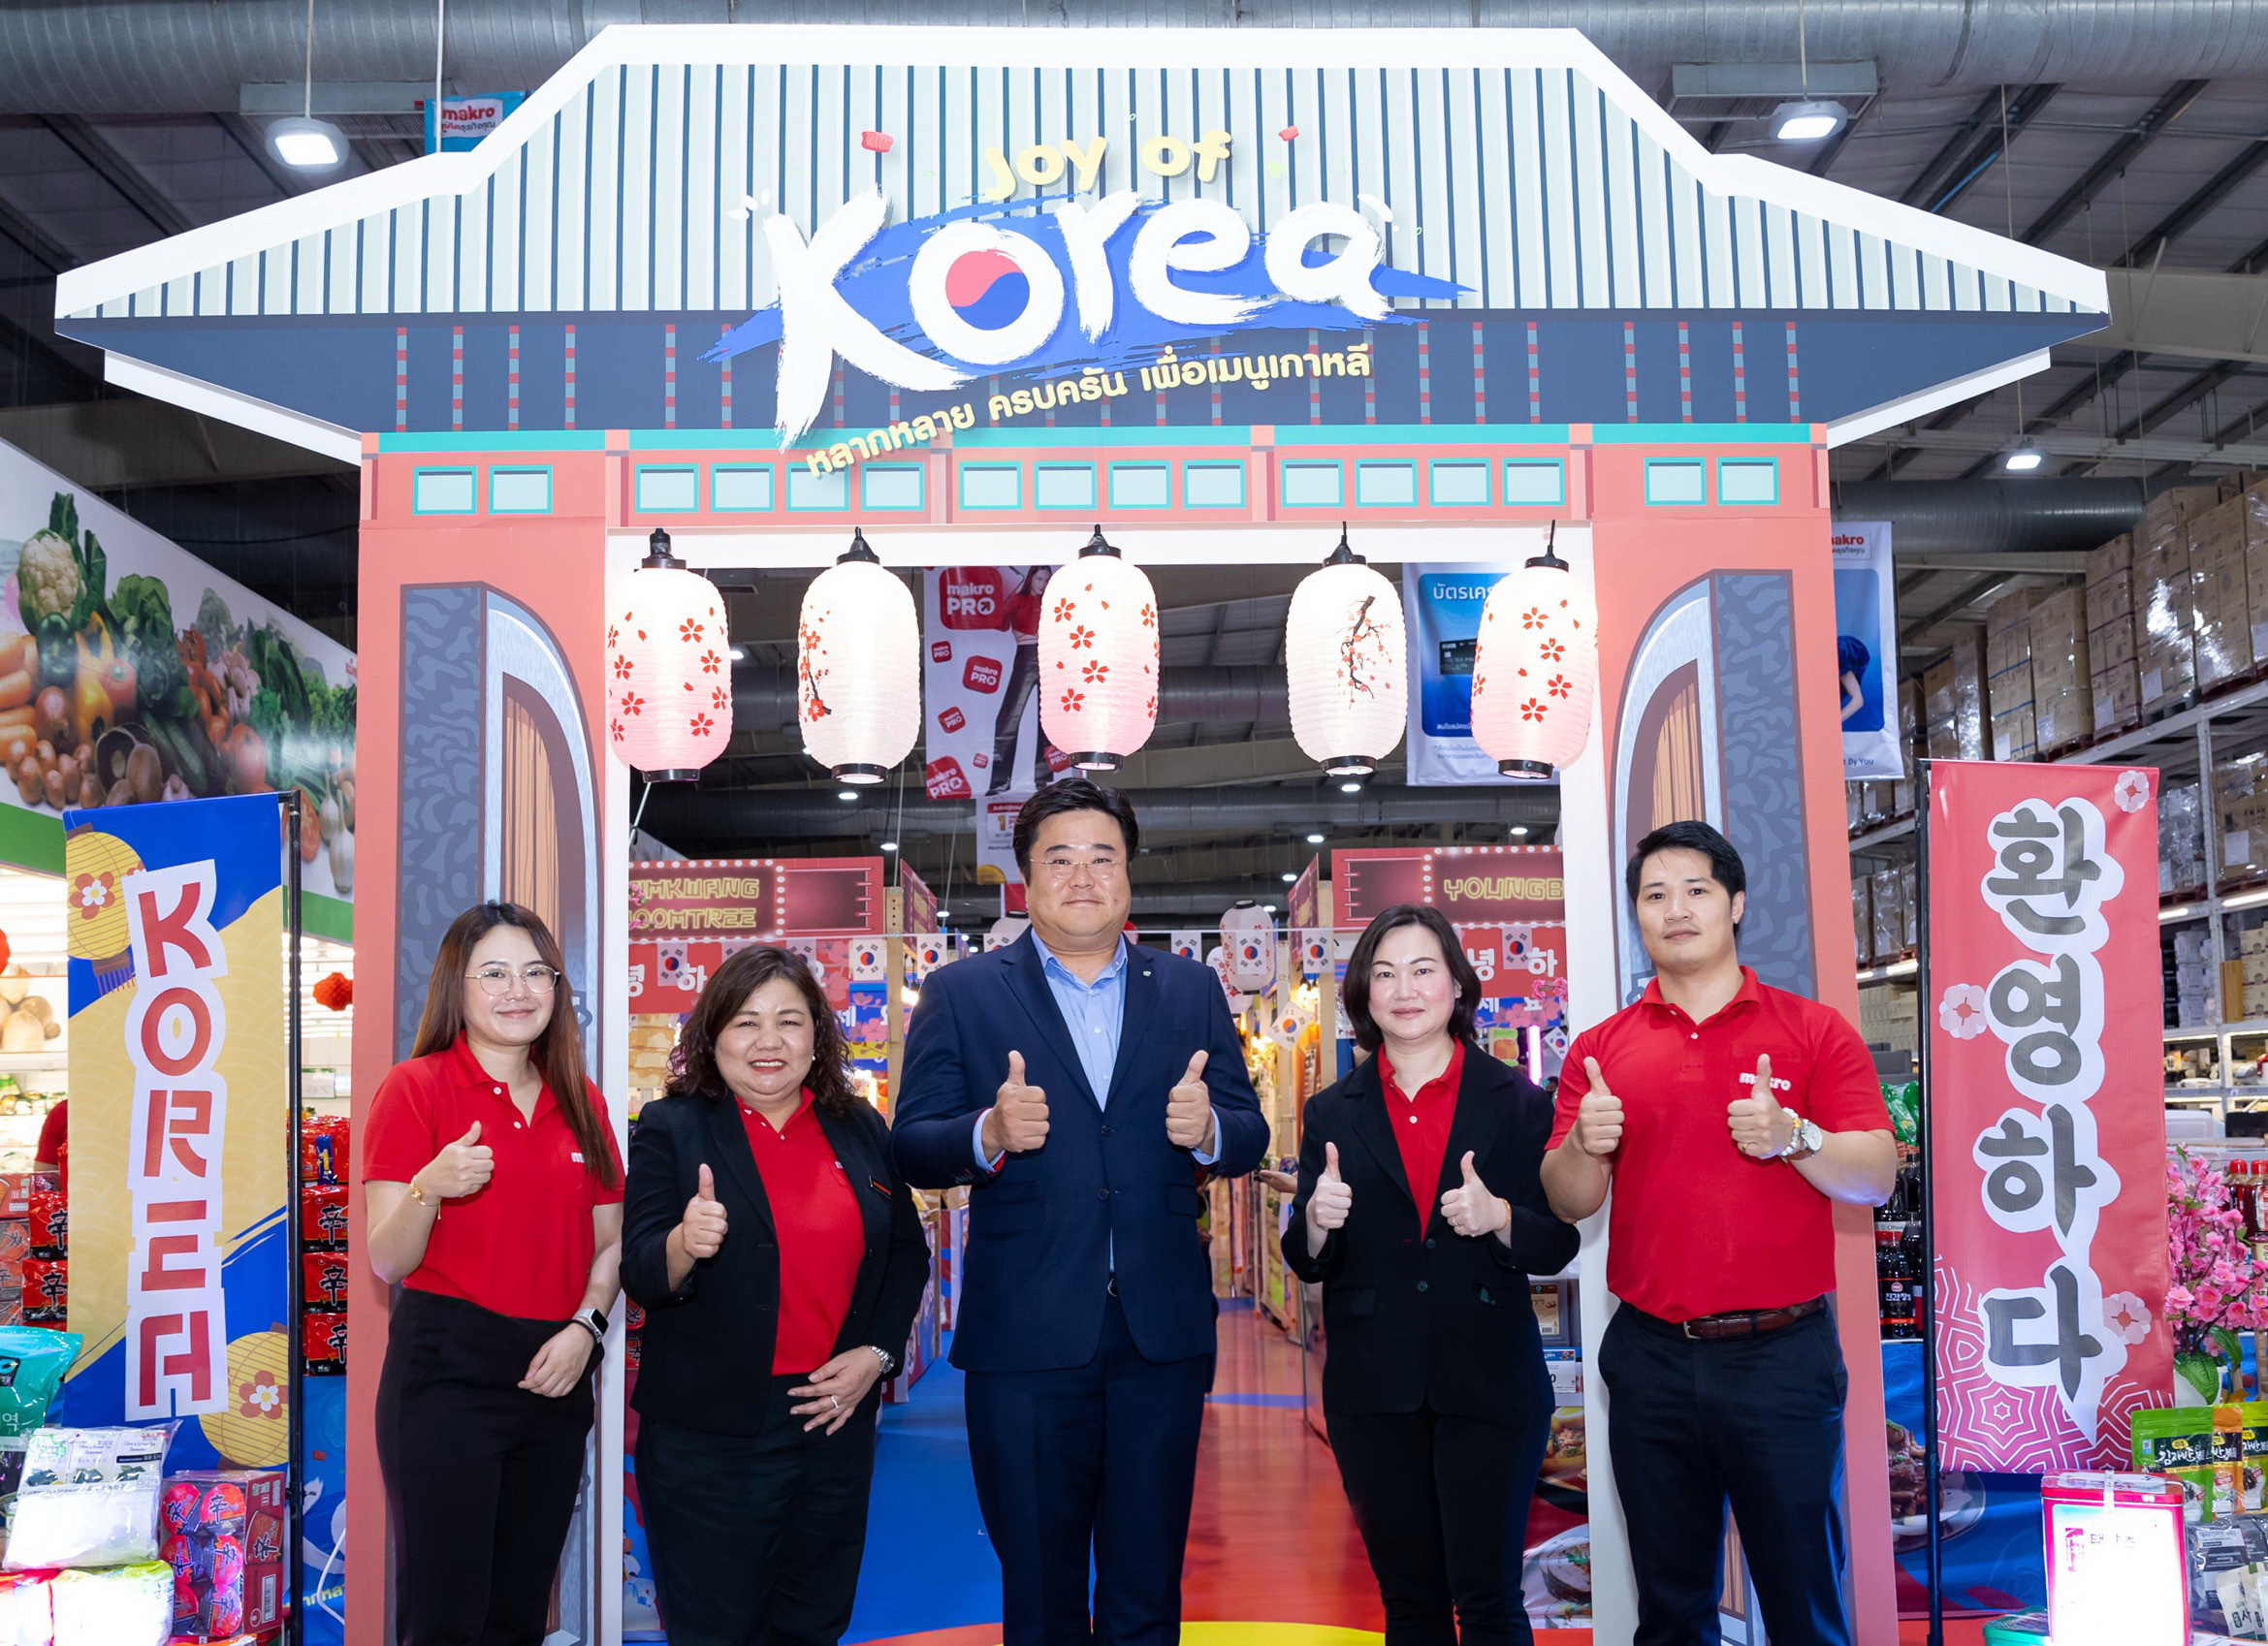 แม็คโครนำเทรนด์อาหารเกาหลีสู่ตลาดไทย ขนทัพสินค้าคุณภาพกว่า 200 รายการ จัดเทศกาล “Joy of Korea” ตอกย้ำแหล่งรวมสินค้าคุณภาพจากทั่วโลกในราคาเอื้อมถึง